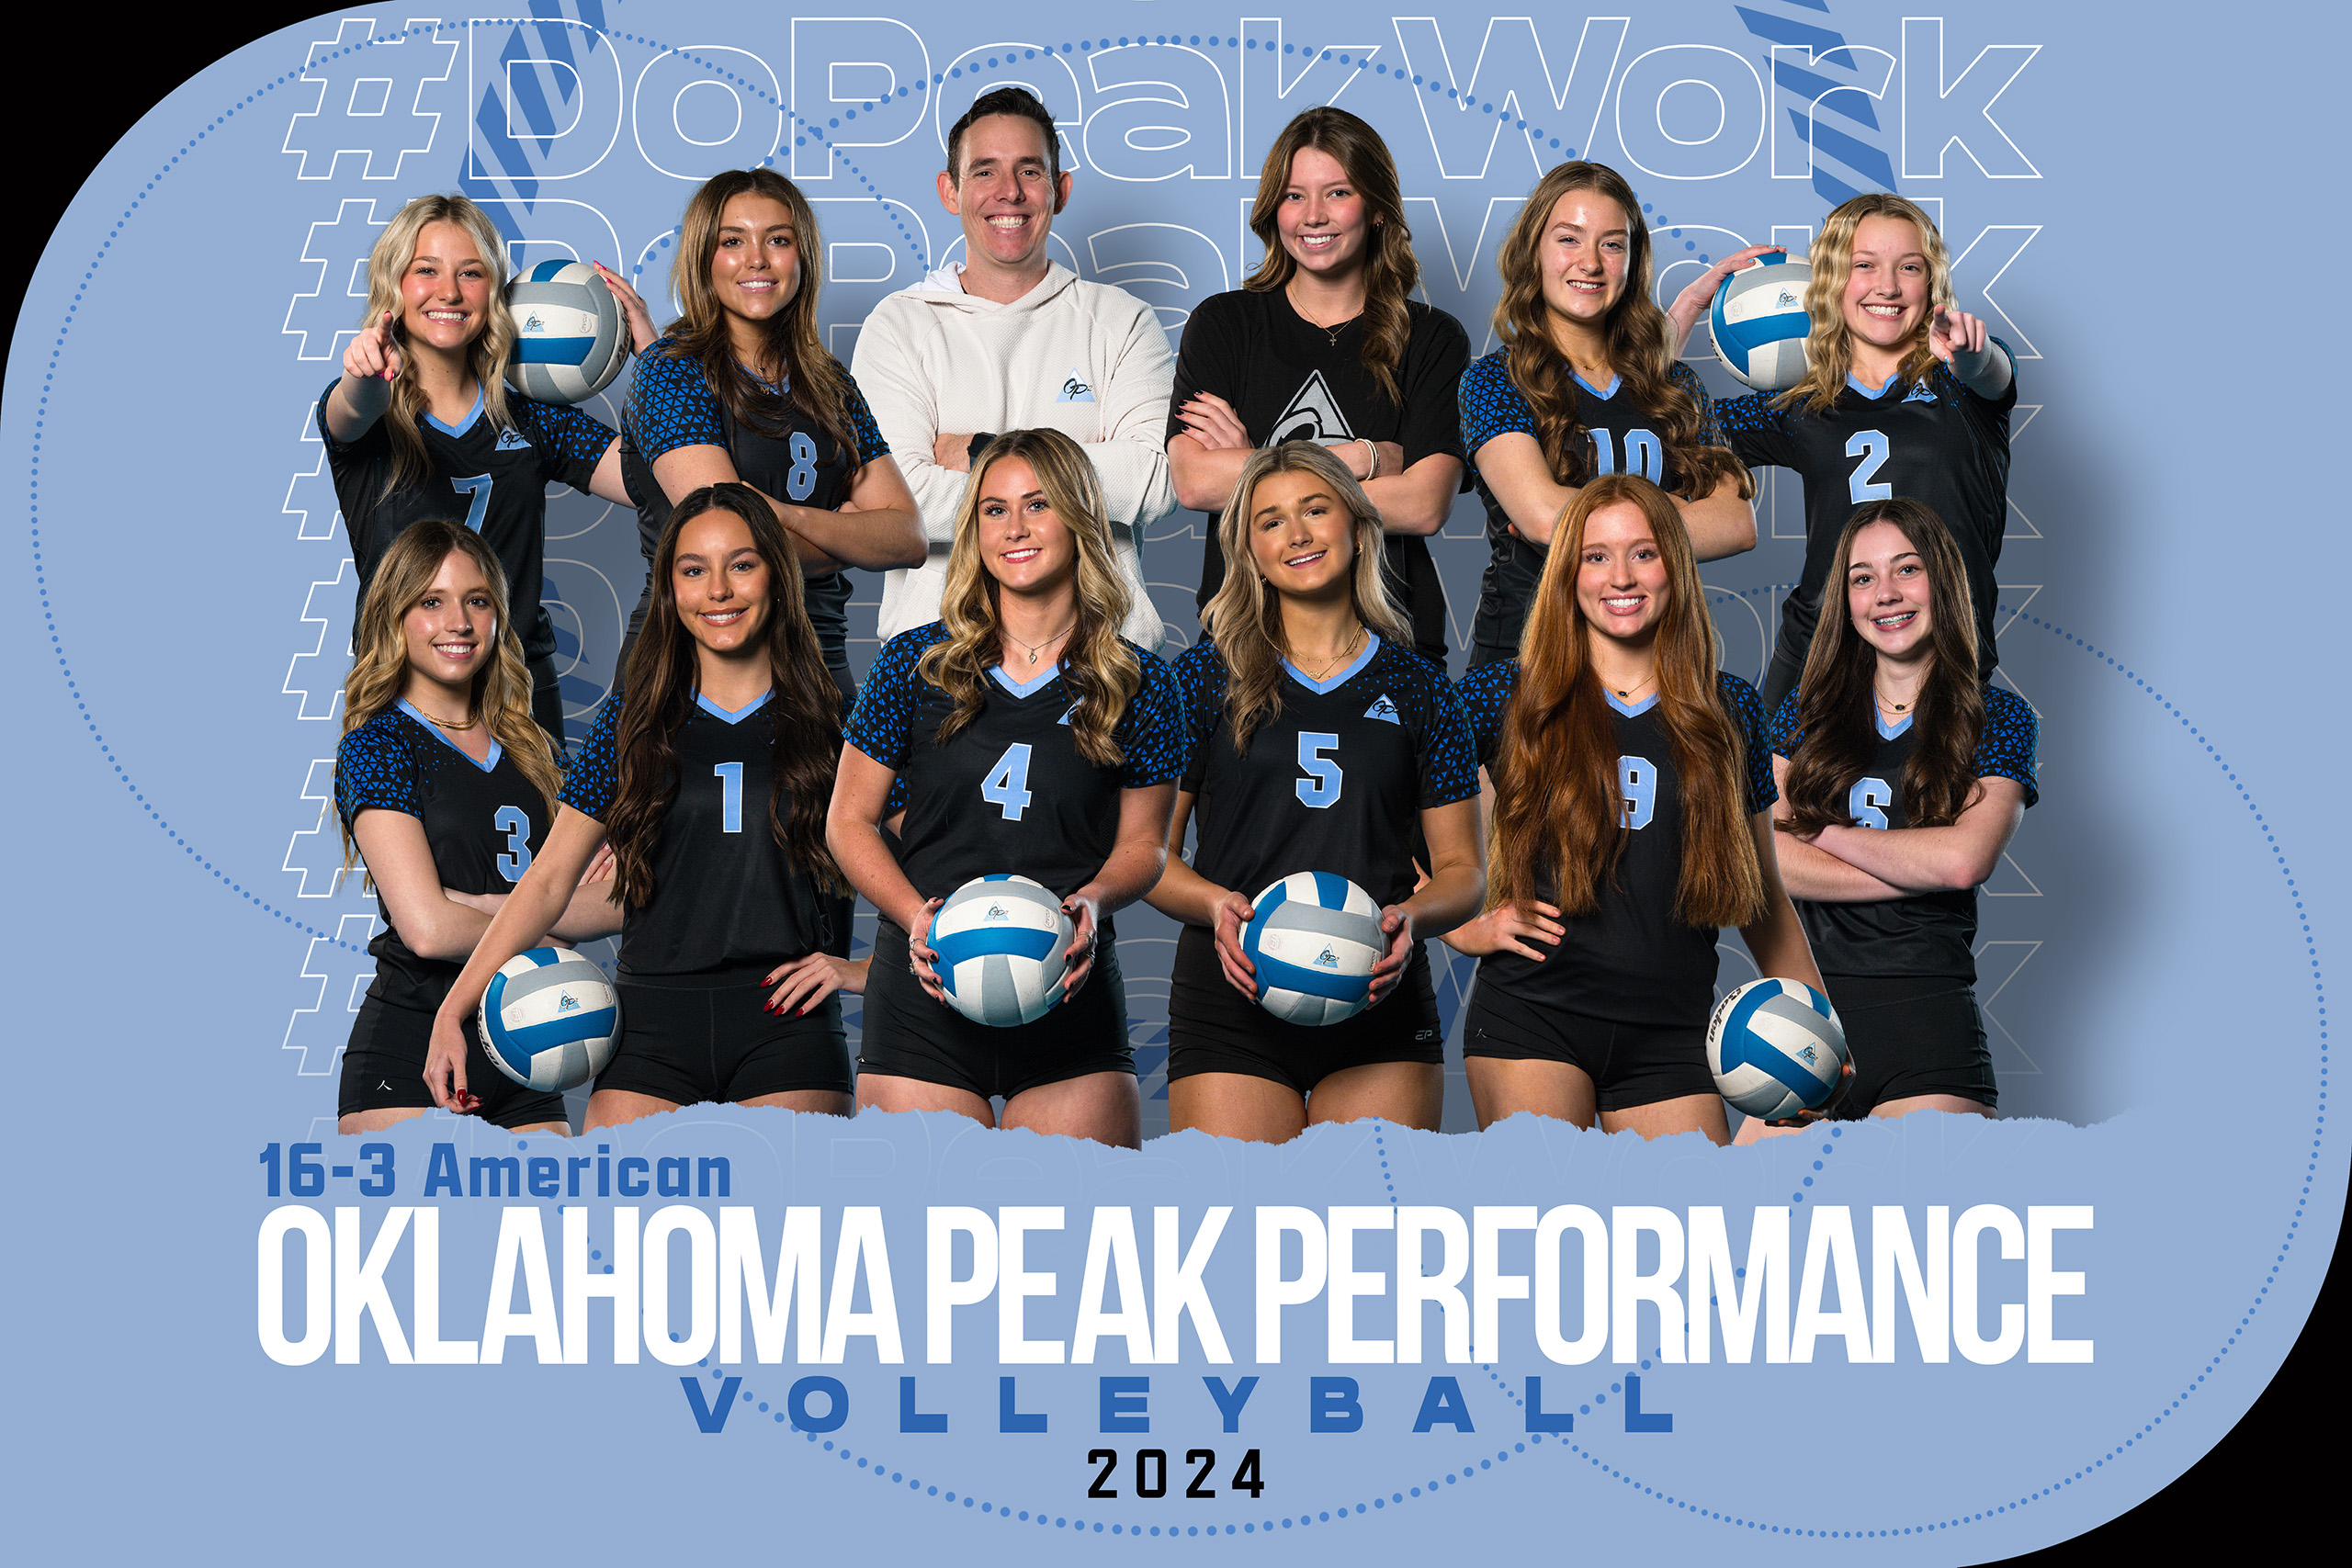 2024 Oklahoma Peak Performance 16-3